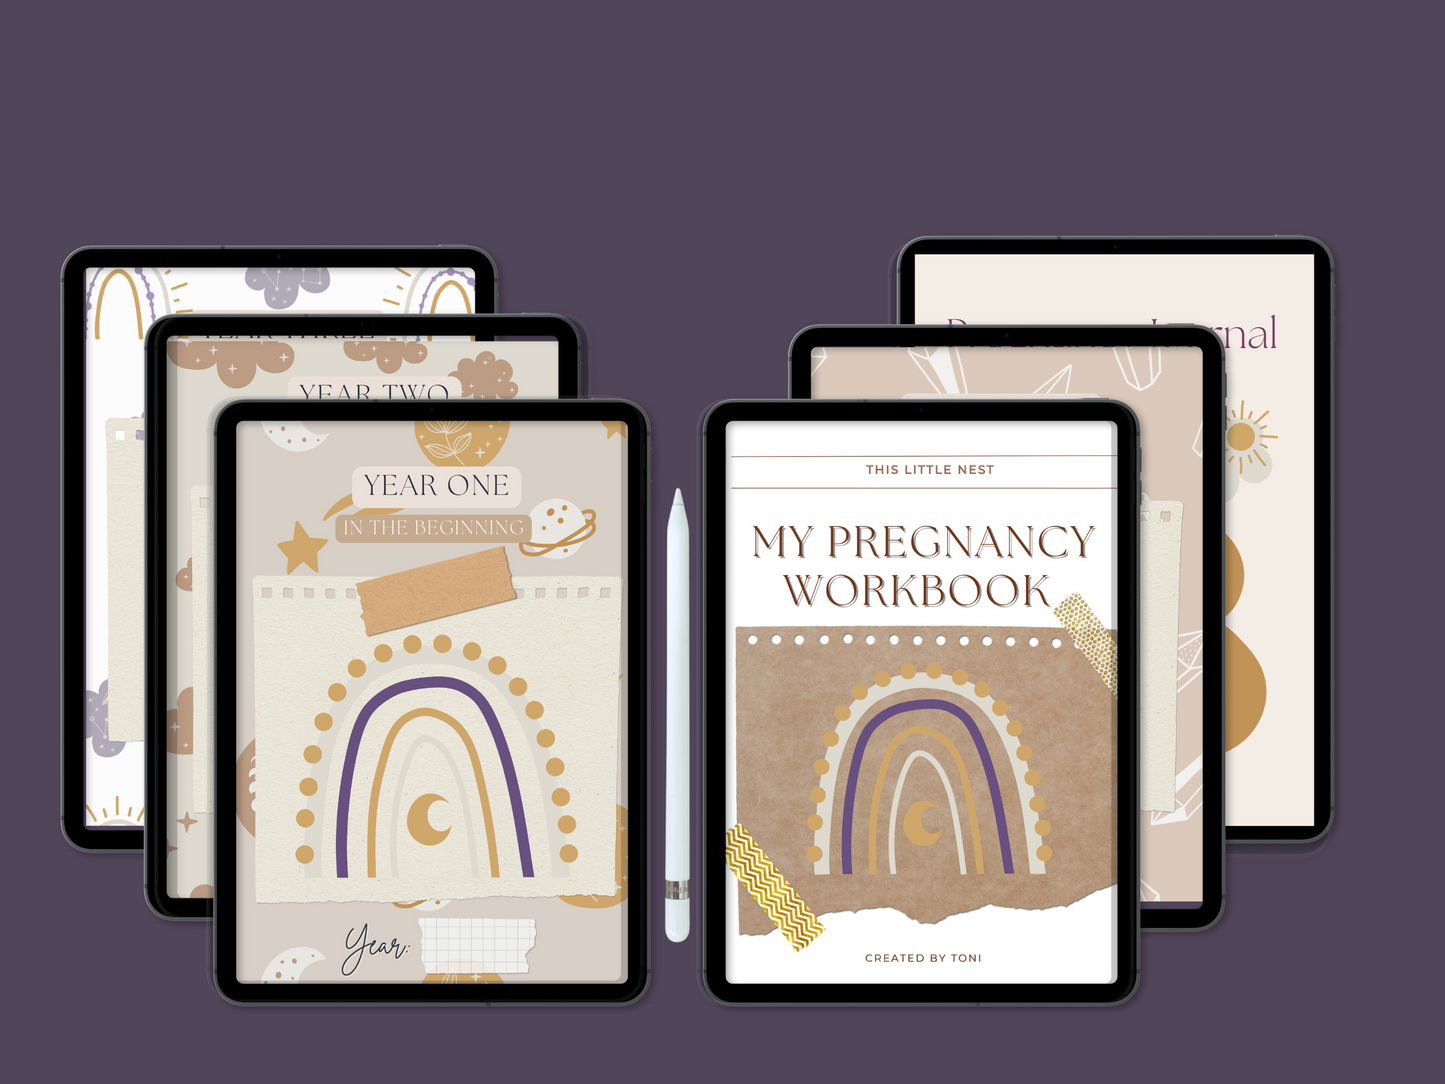 Digital Pregnancy Package, Workbook, Scrapbook, Journal, And More